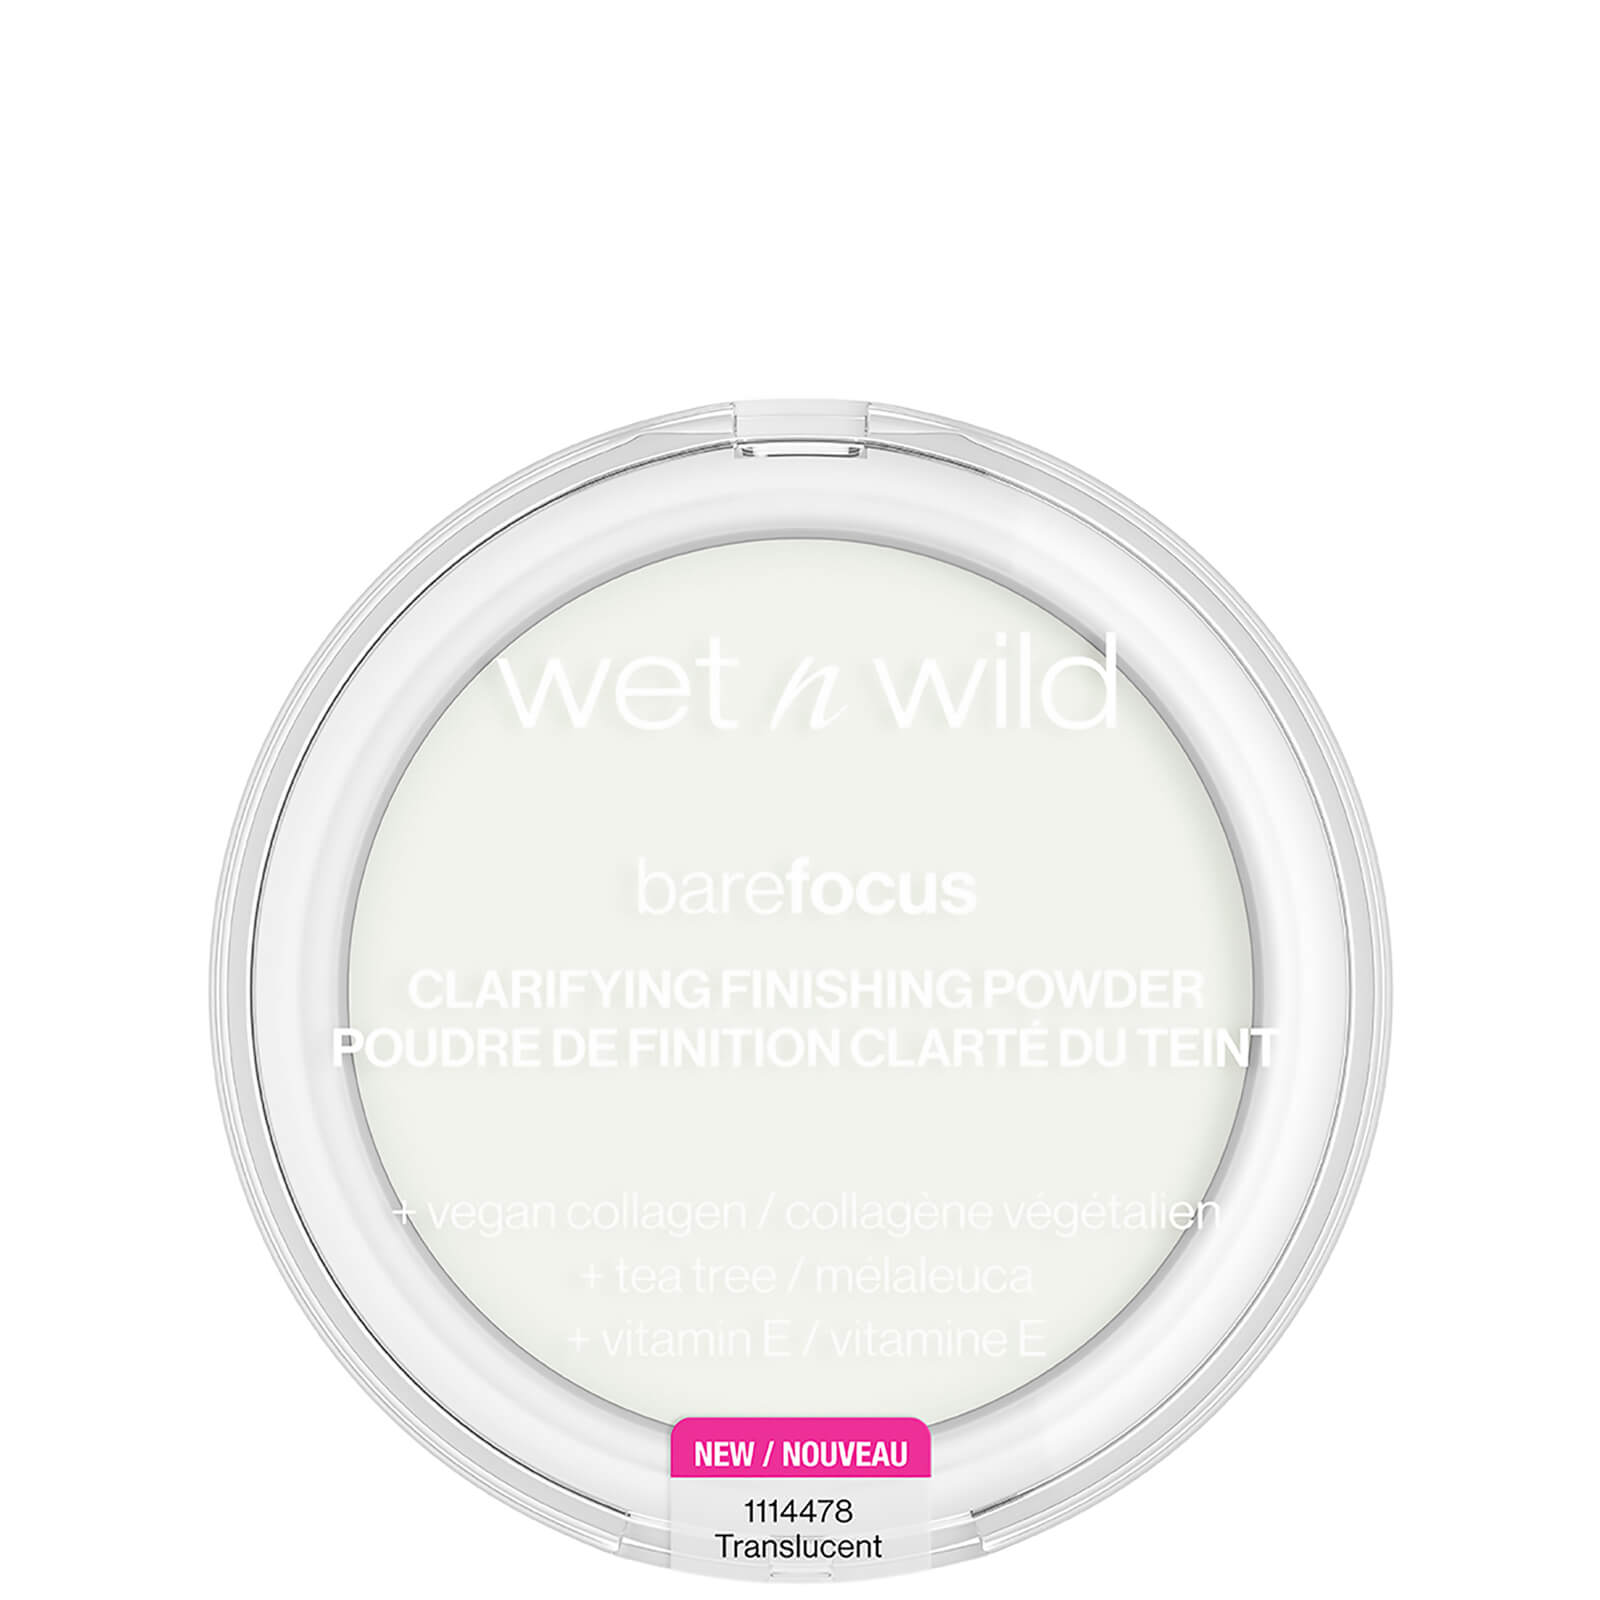 Wet N Wild Bare Focus Clarifiying Finishing Powder 6g (various Shades) - Translucent